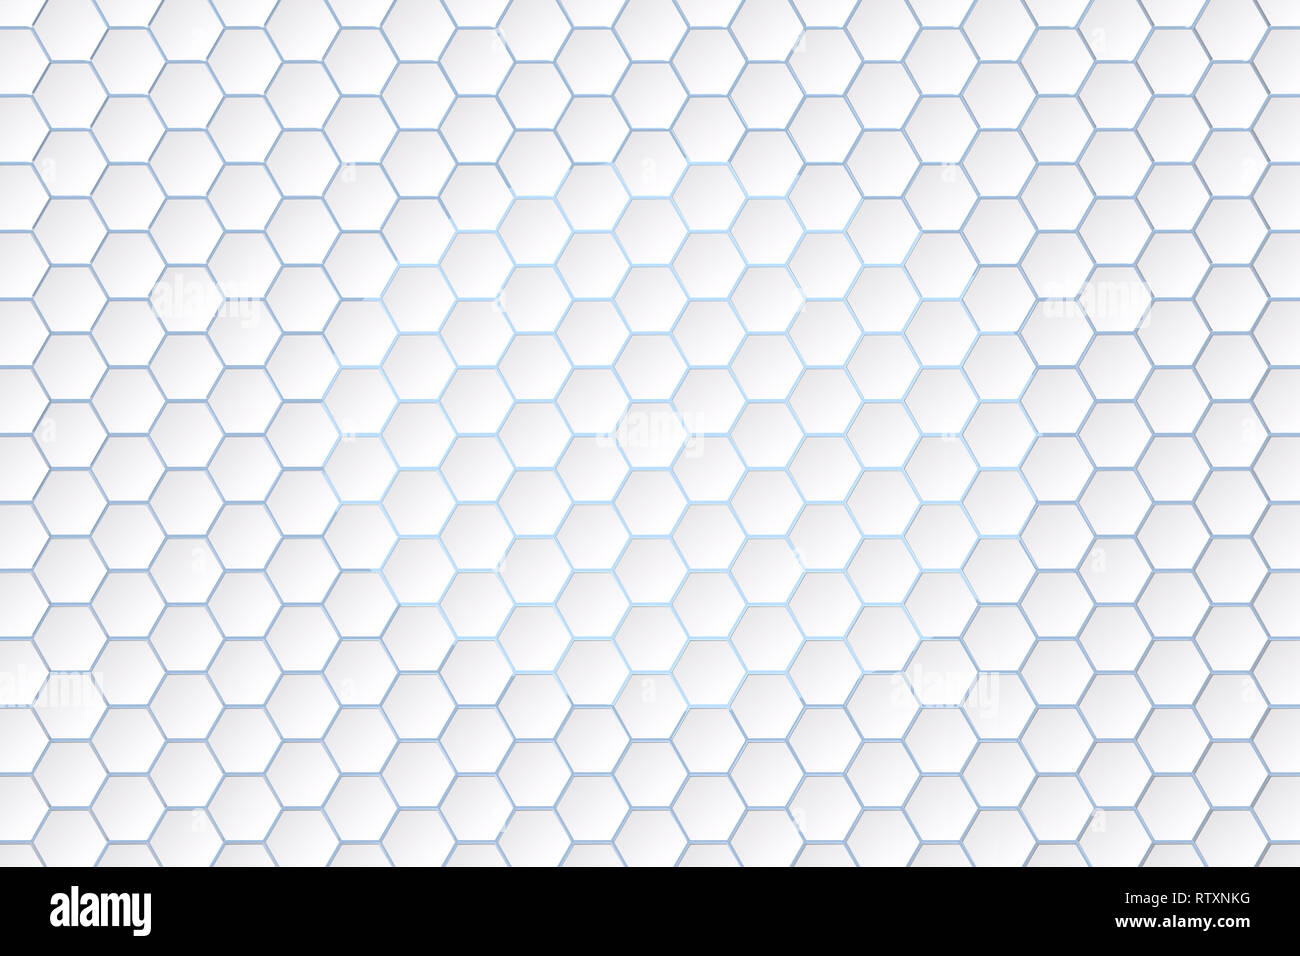 Le rendu 3D, l'arrière-plan hexagonal blanc Banque D'Images